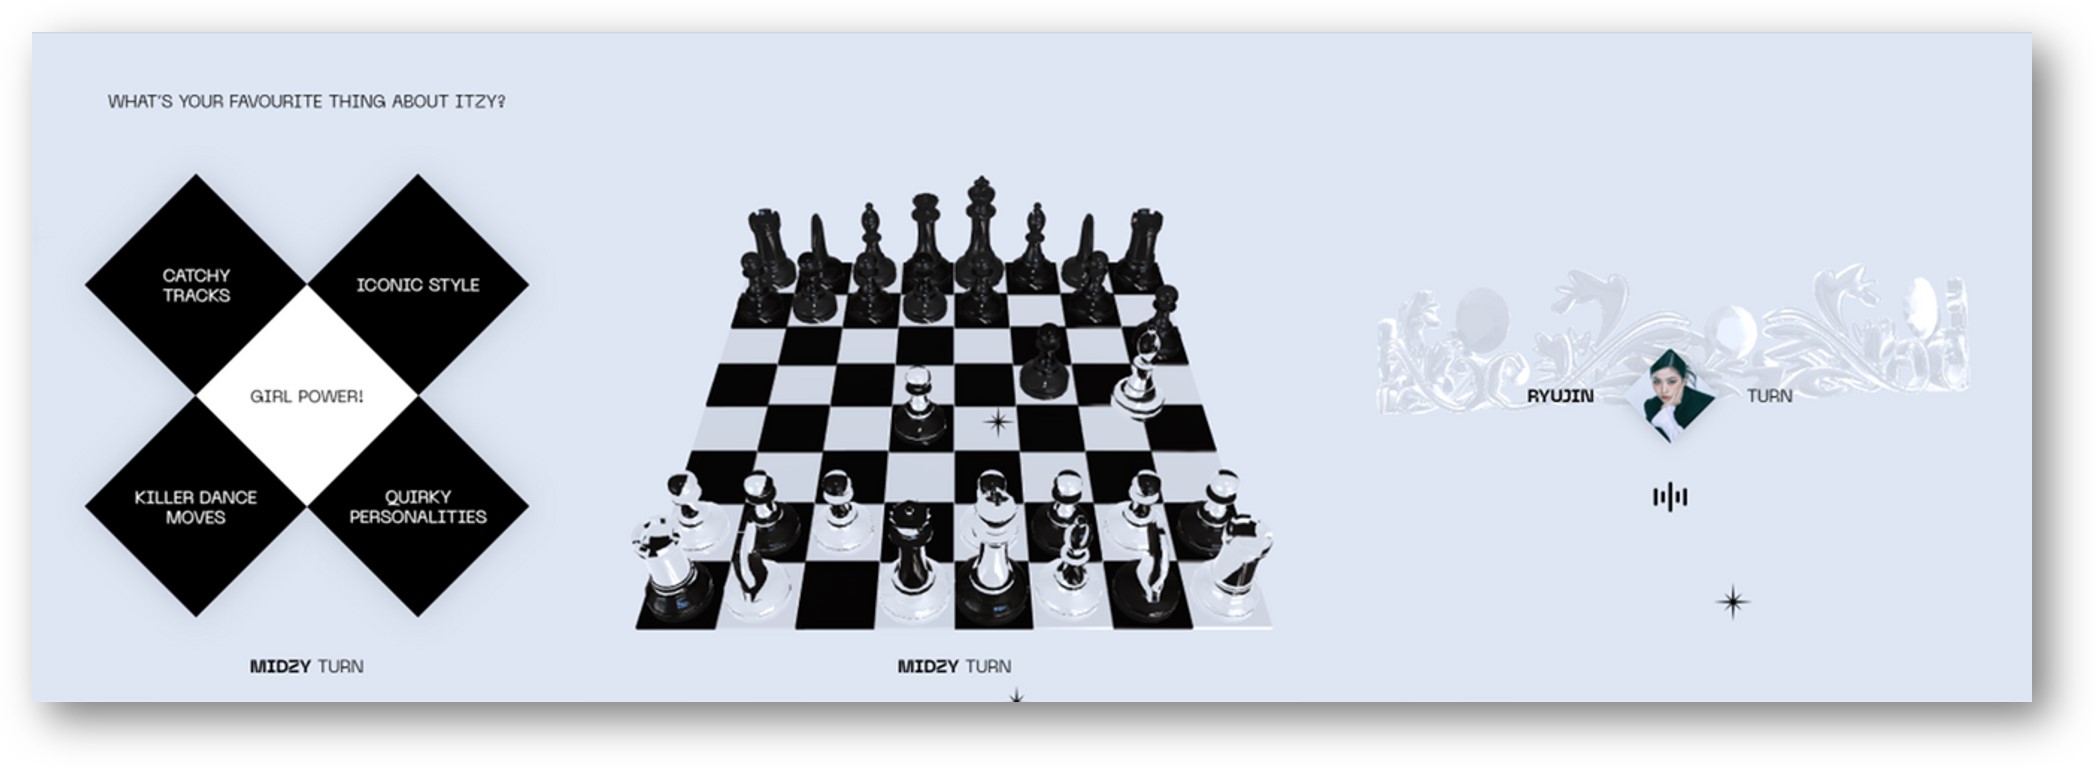 (좌) ITZY에 대한 상황문답이 선택되면, 체스가 움직이며 플레이 된다. <br>(우) 중간중간 들을 수 있는 멤버별 보이스 메세지.